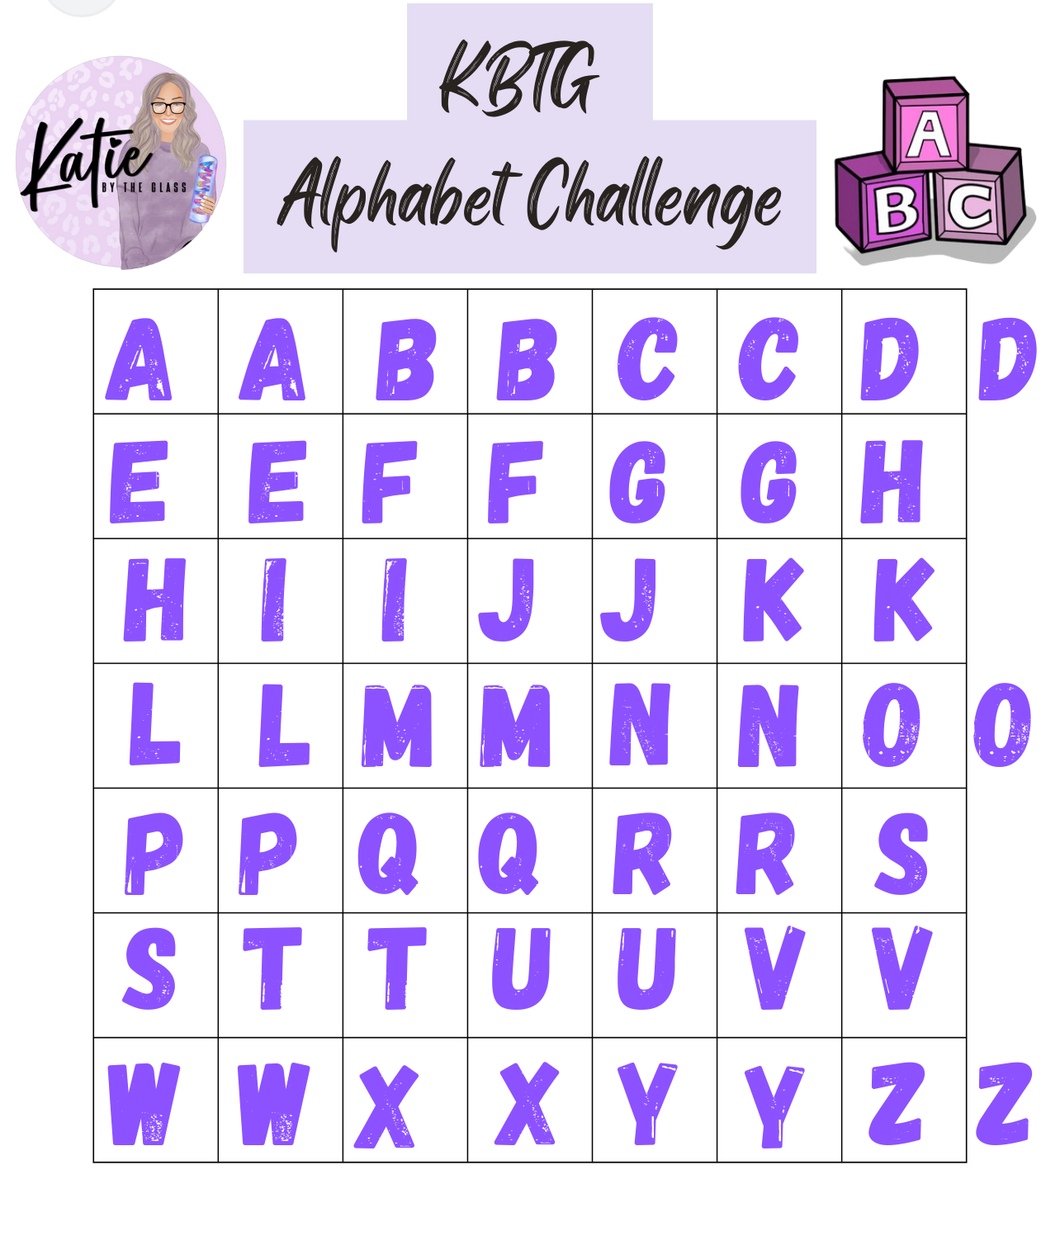 Katie’s Alphabet Challenge